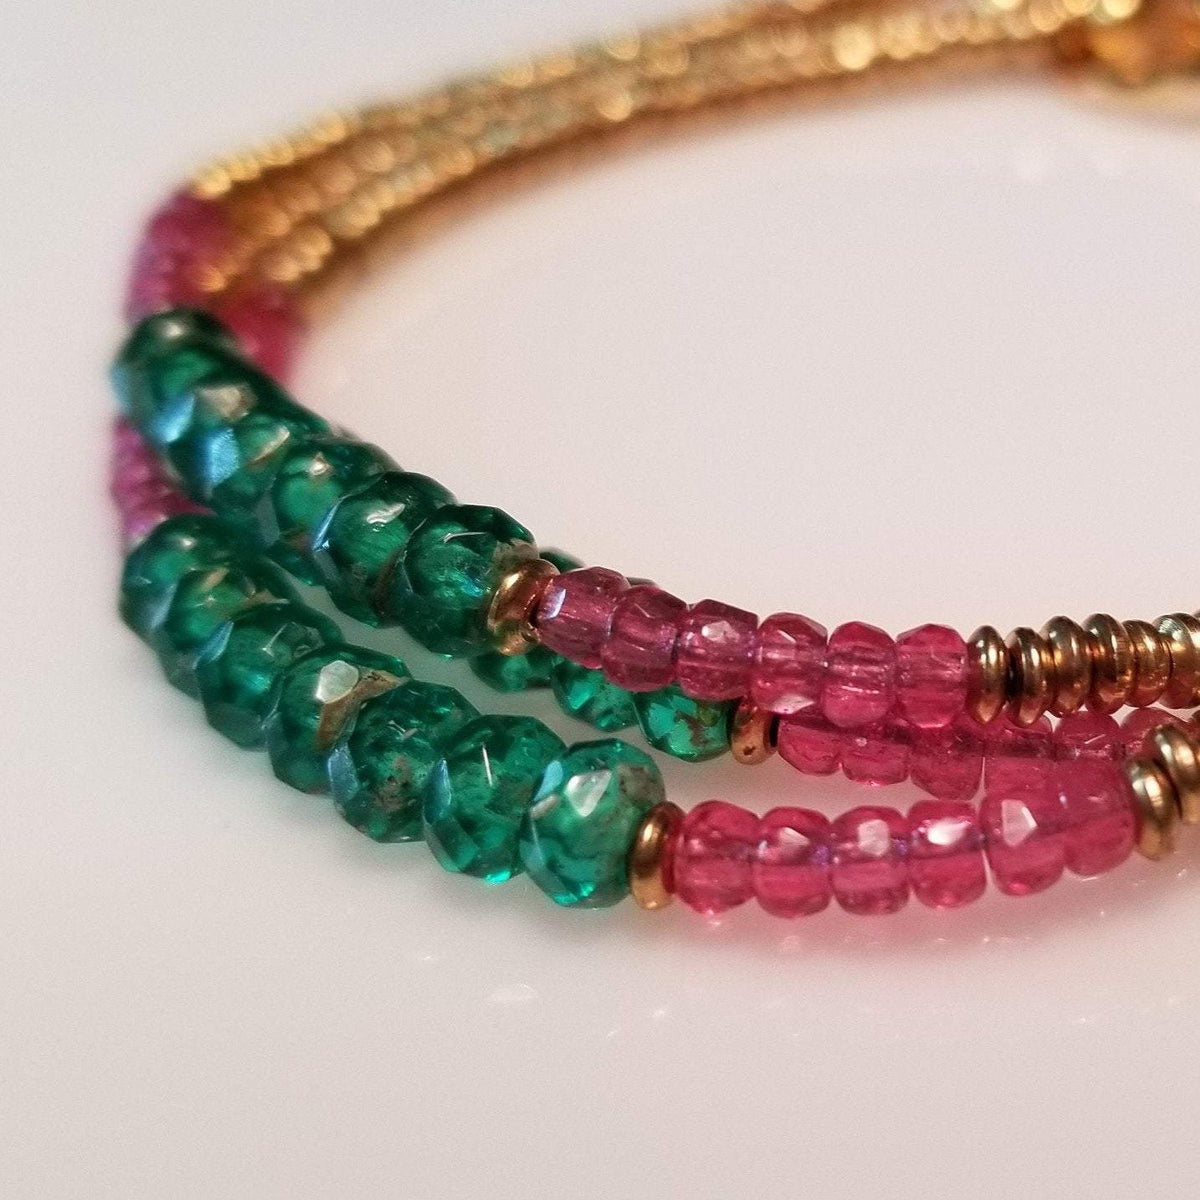 Green and pink Czech beads bracelet